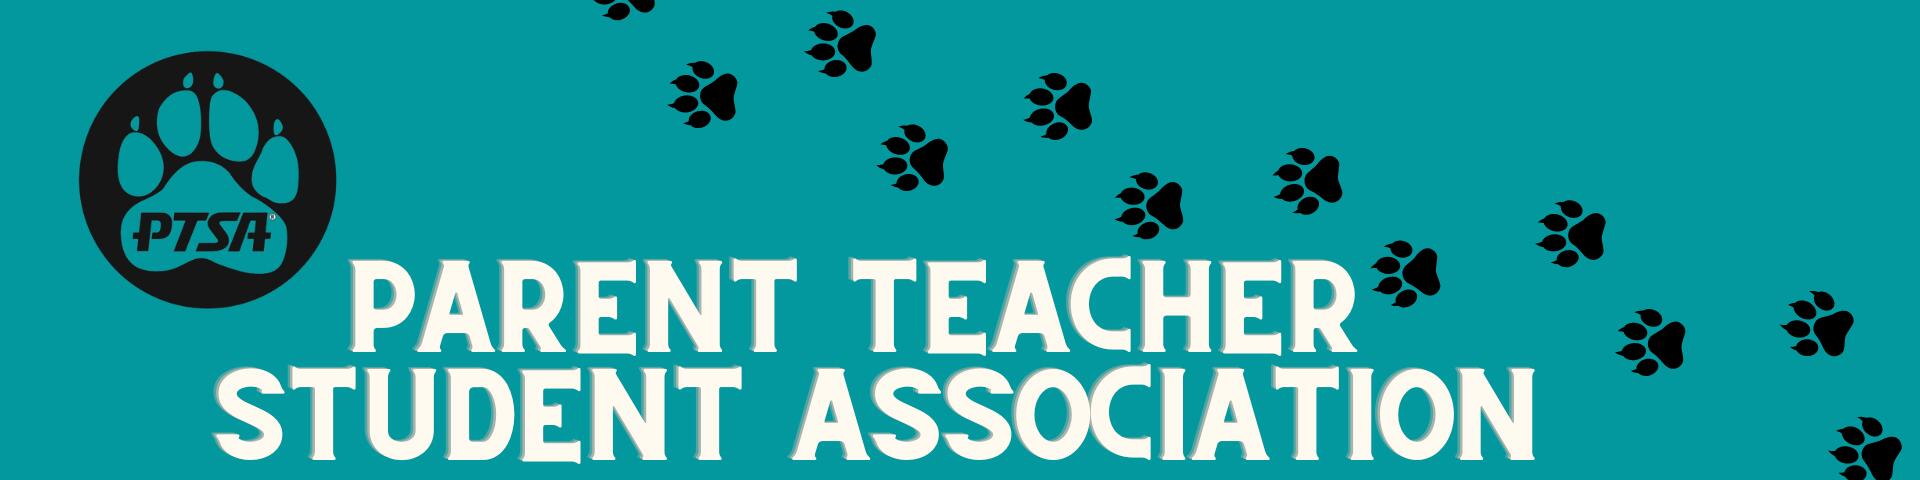 Parent Teacher Association banner